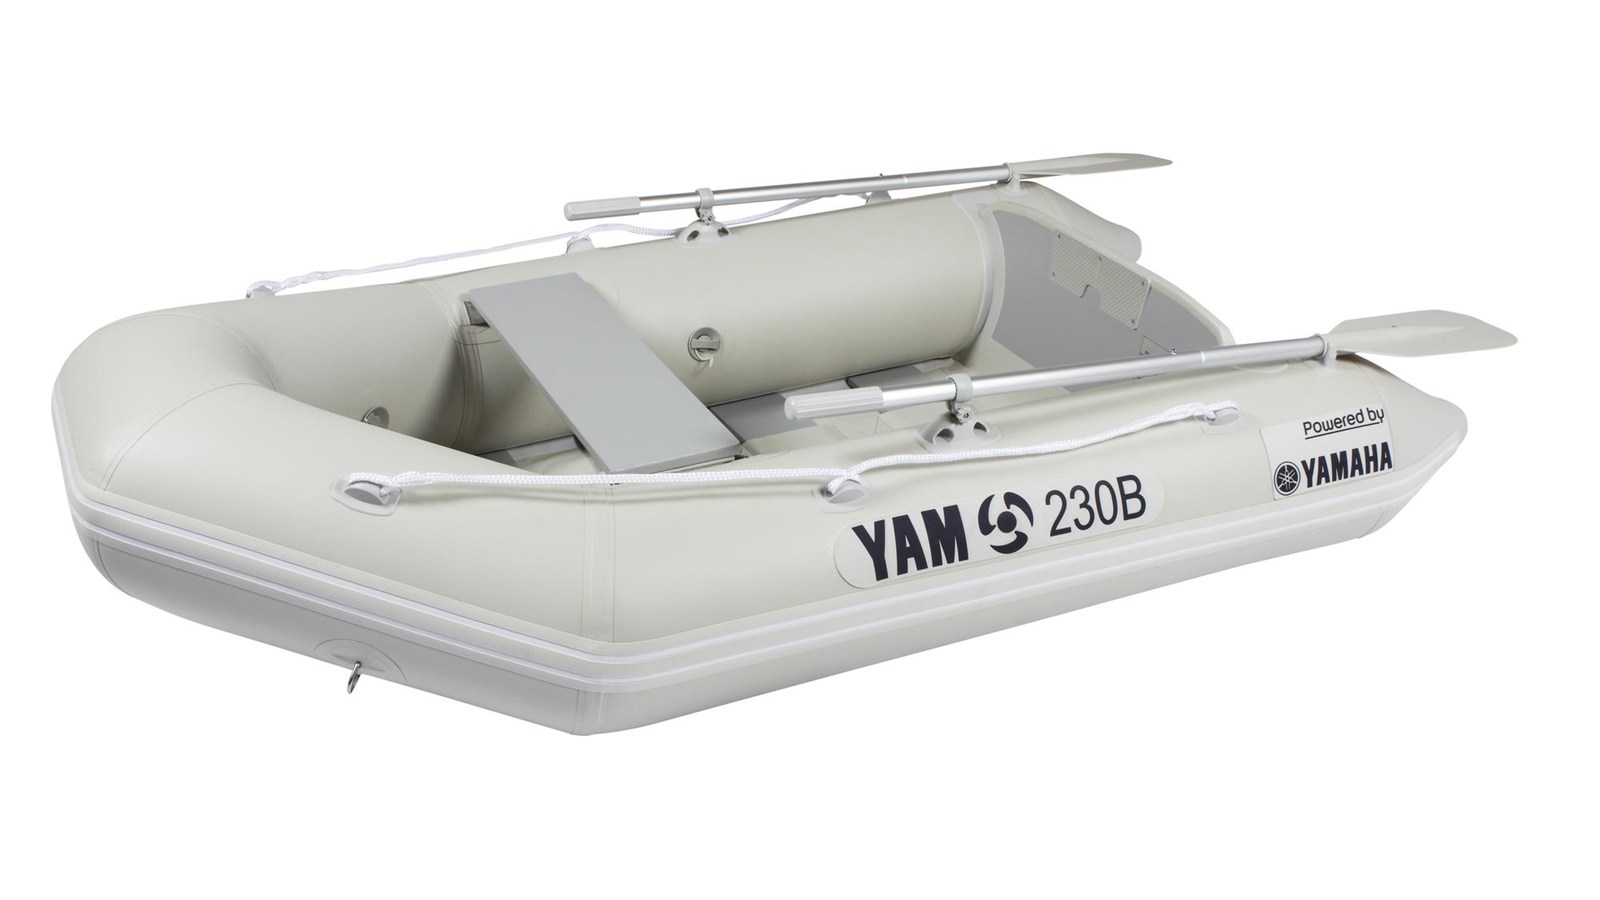 A YAM csónak mindig megbízható partnere lesz Ugorjon be egy YAM csónakba, és csatlakozzon a Yamaha gumicsónakokat használók boldog táborához szerte Európában!